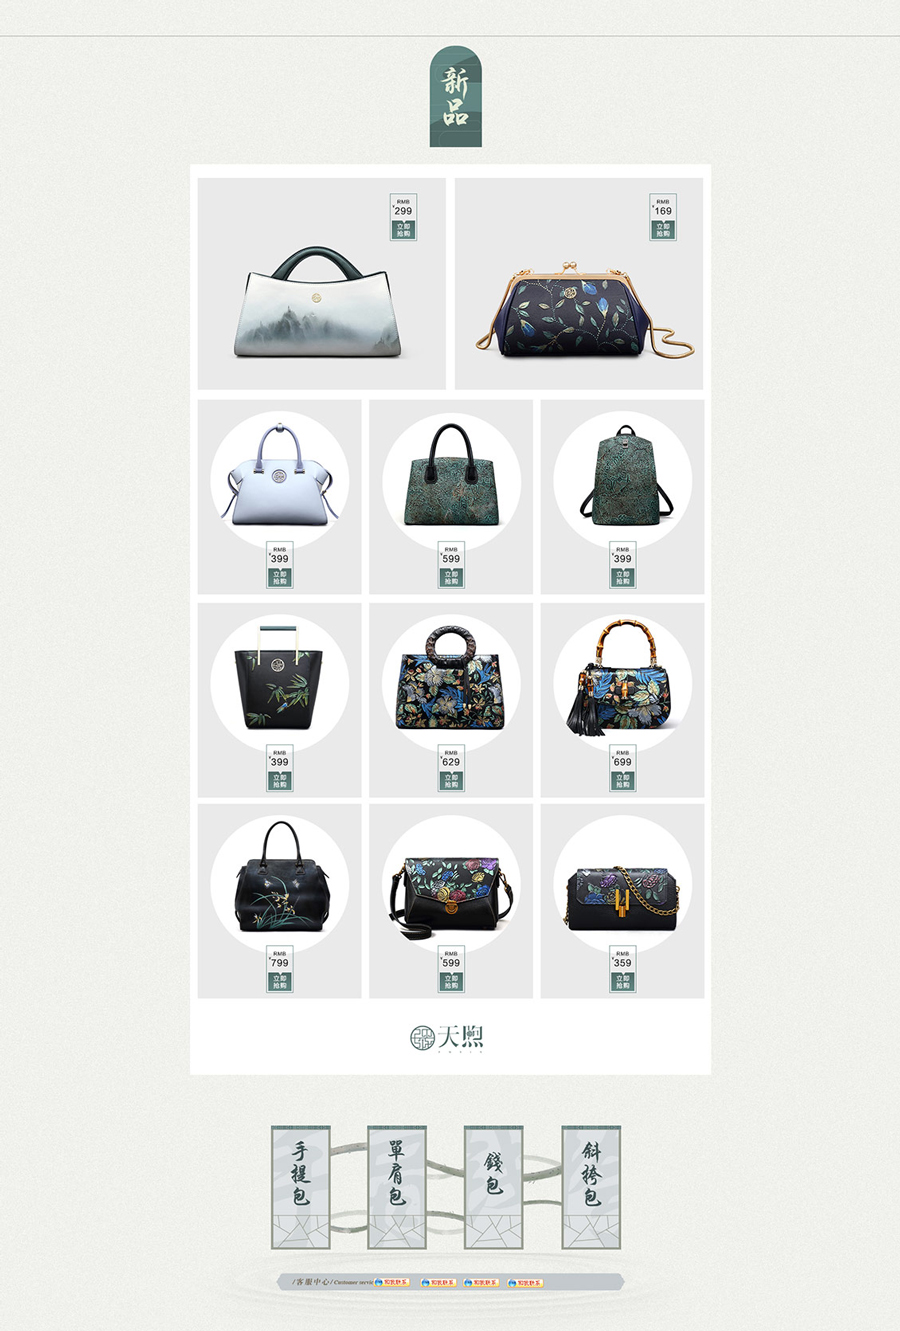 女包专题页面设计案例,品牌女包专题页面设计案例,pmsix包包专题页面设计案例